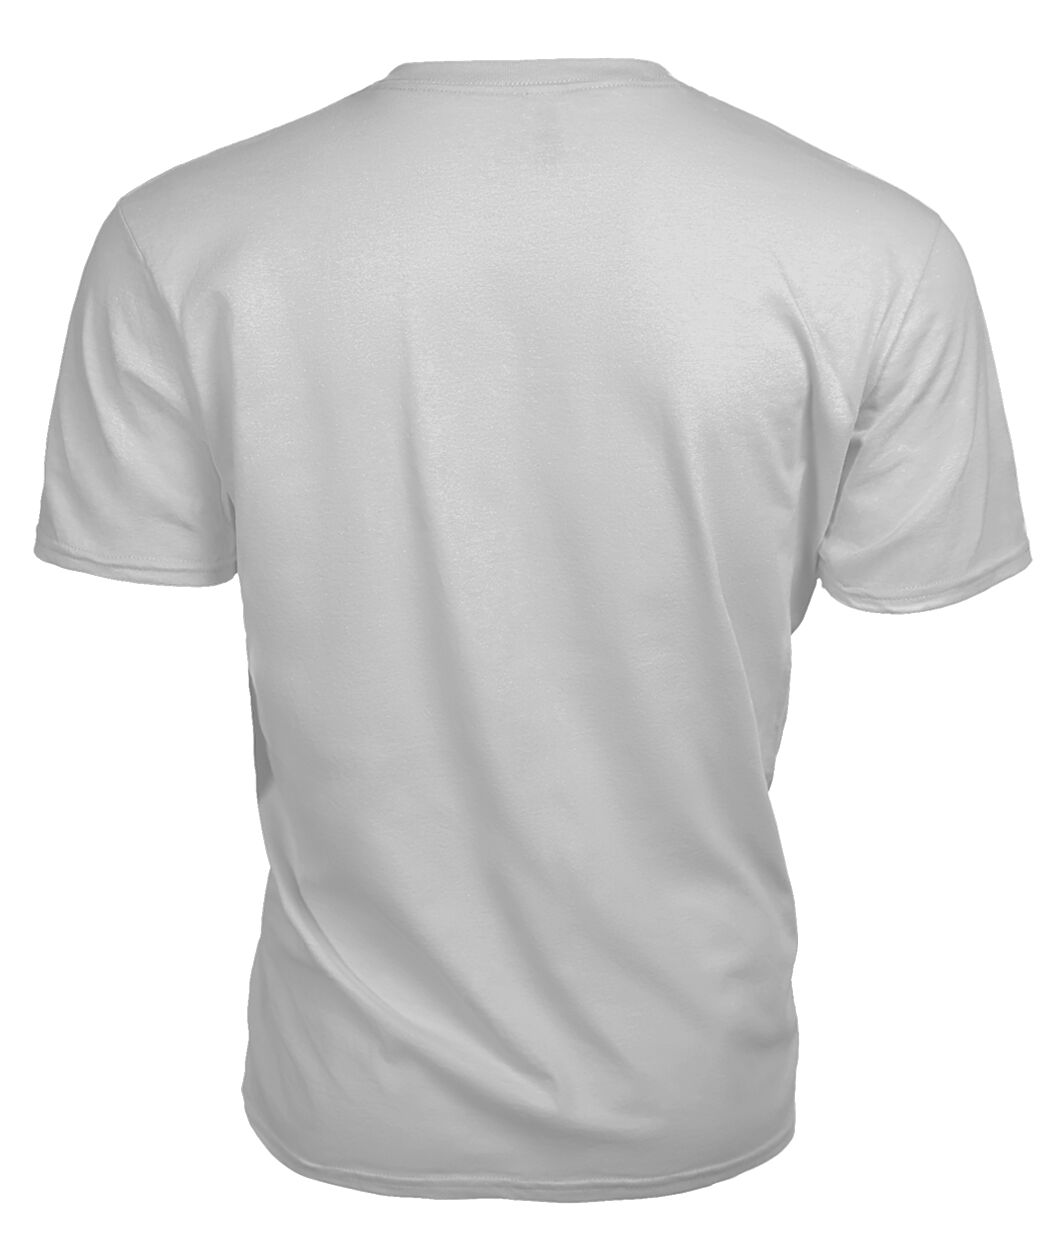 Braden Family Tartan - 2D T-shirt